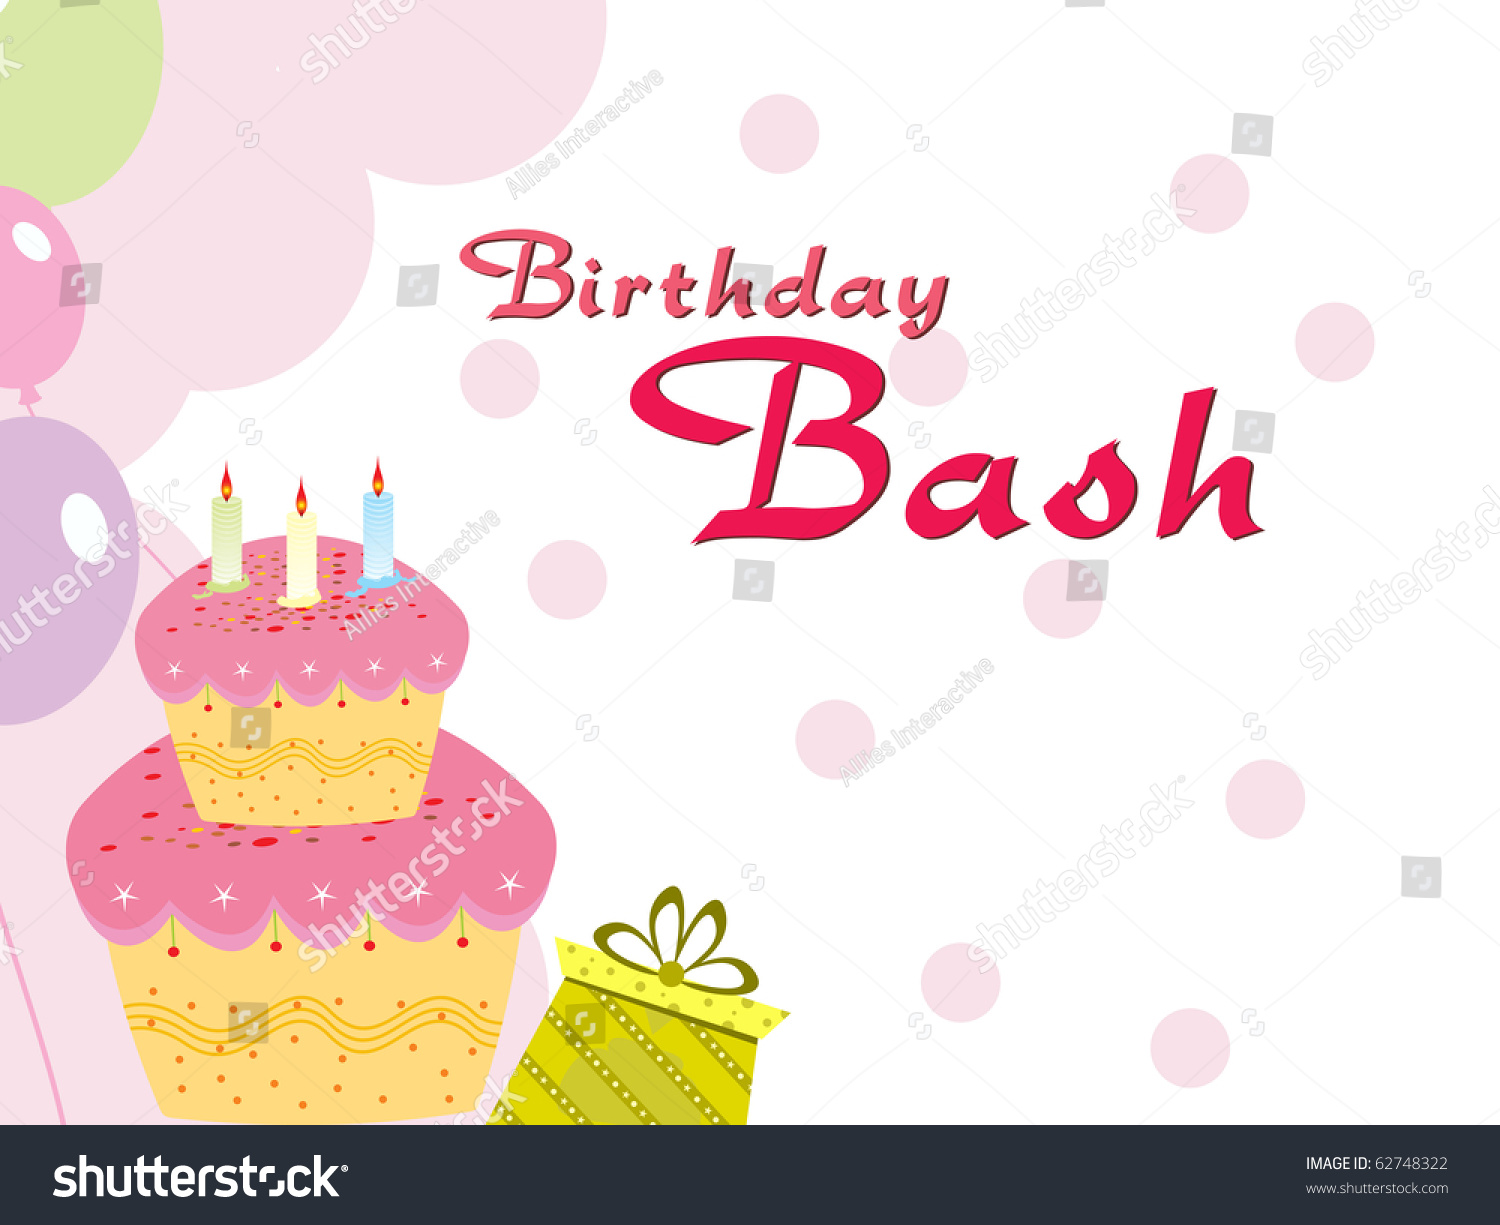 金色の誕生日バナーと落ちぶれのあるカラフルなバースデーケーキ写真素材 Shutterstock